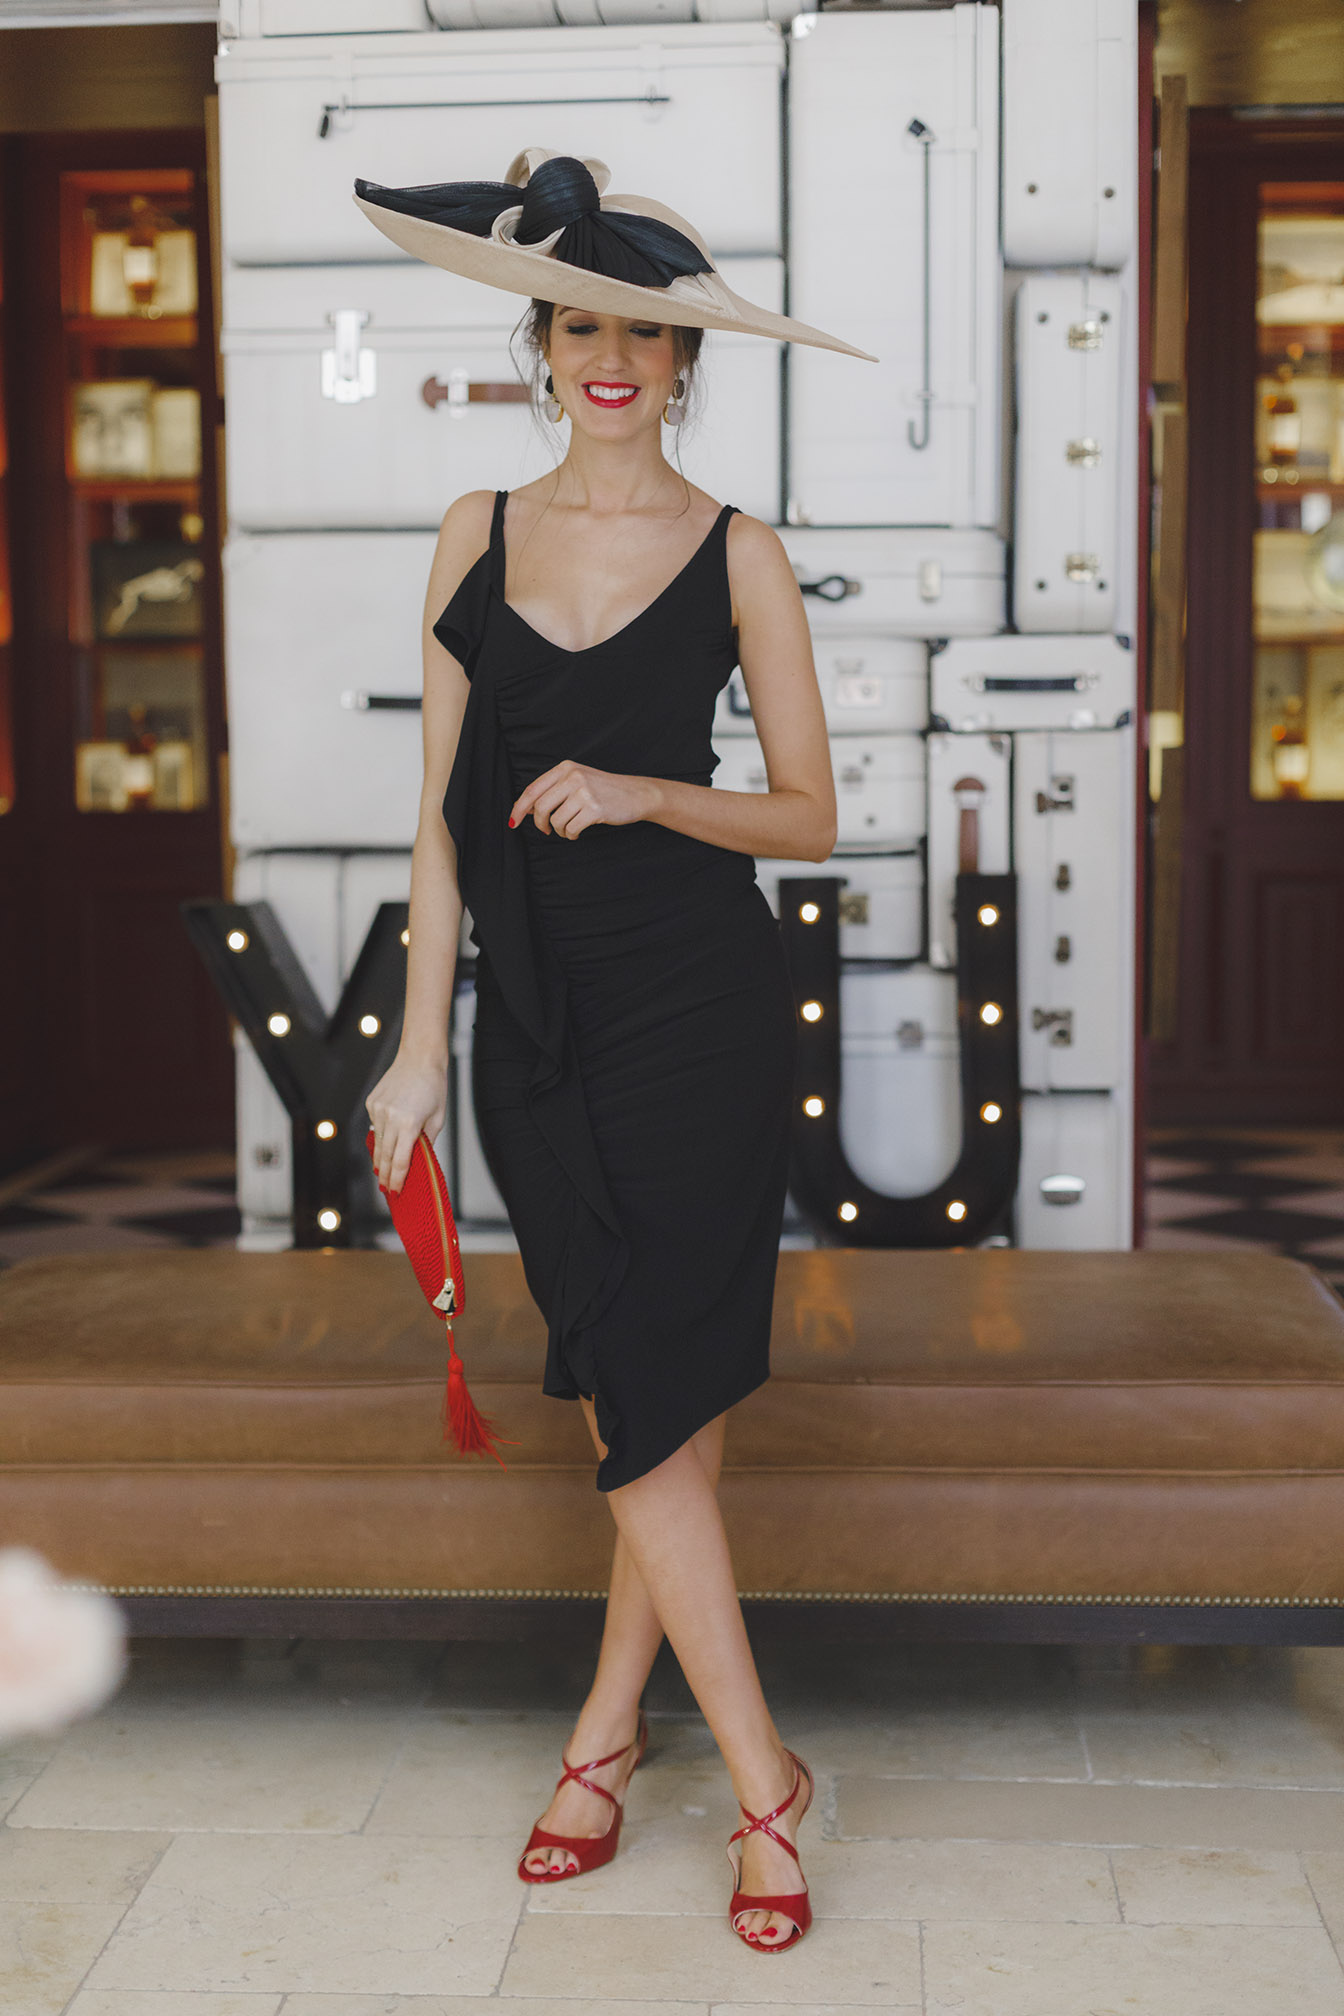 Look invitada boda 2018 vestido negro complementos rojo pamela 